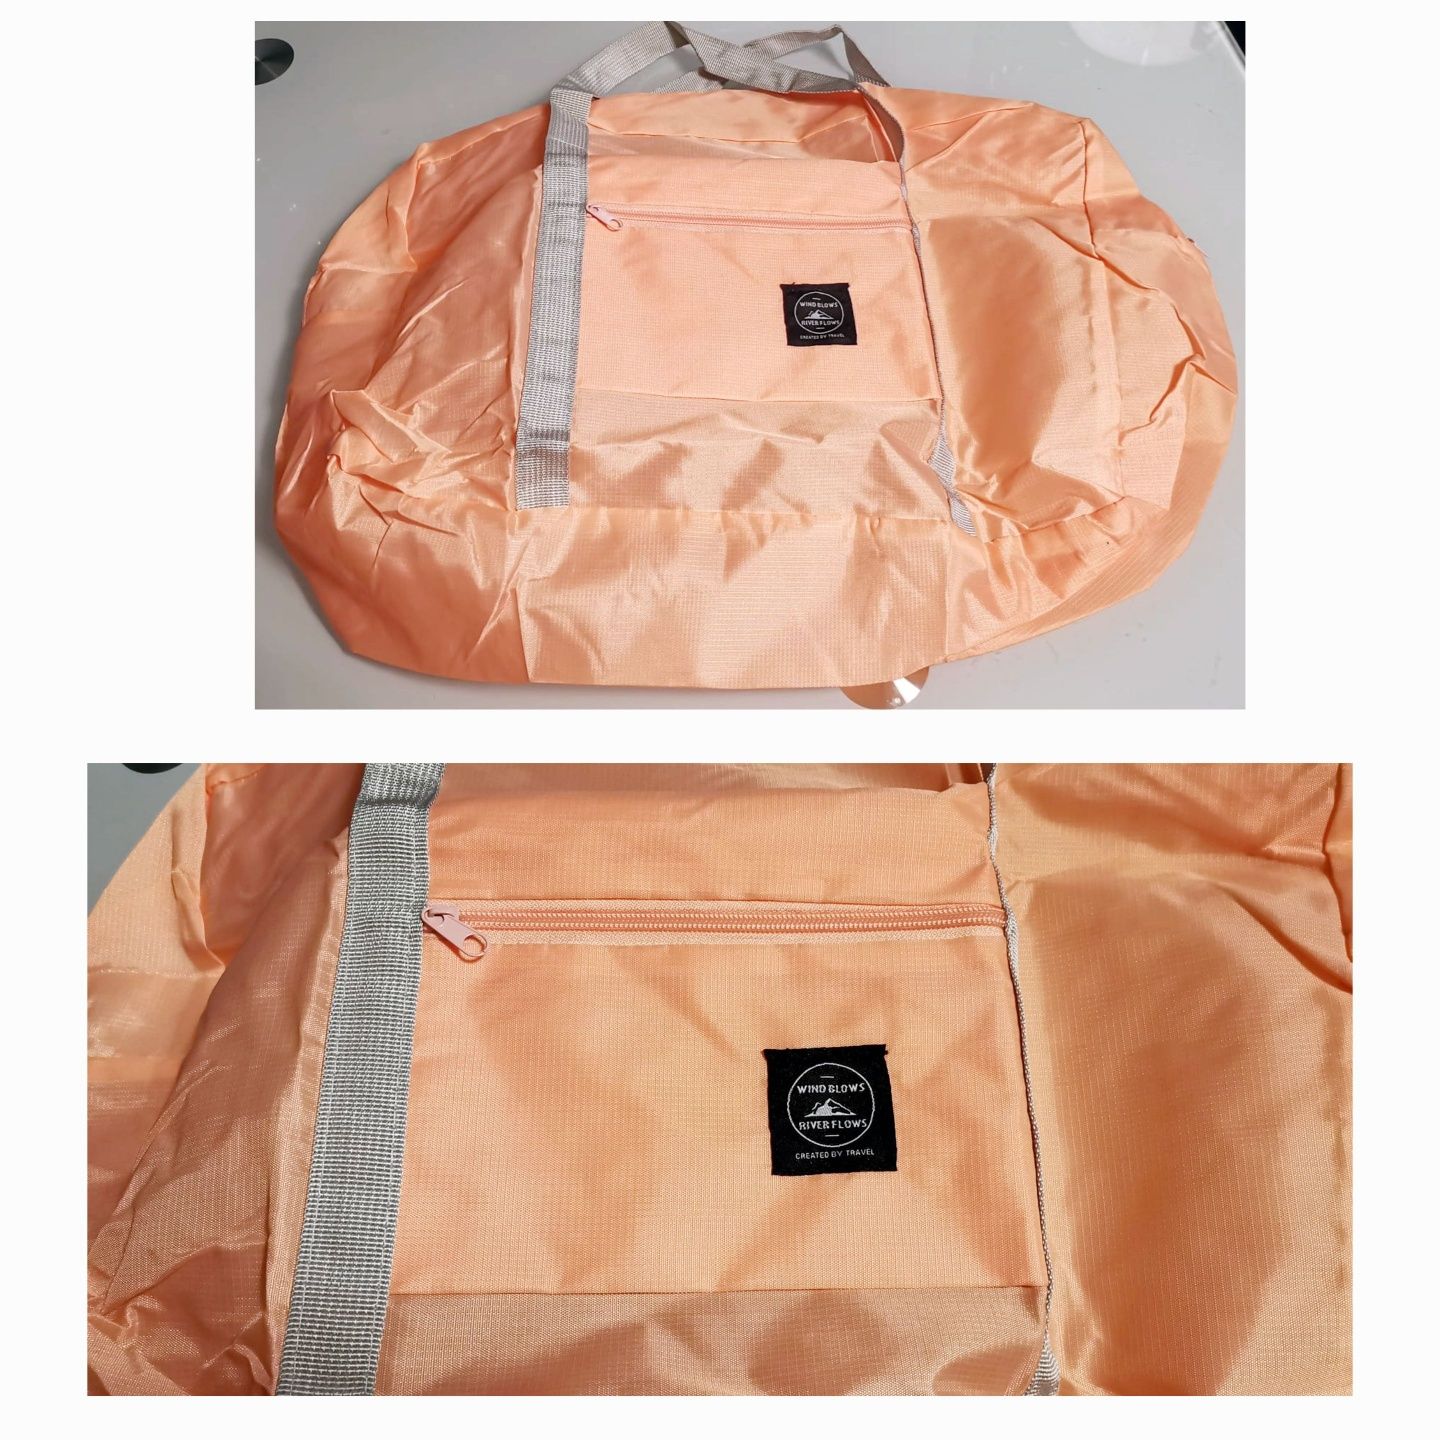 Nowa wygodna, podróżna, wodoodporna różowa torba, 45 cm x 30 cm